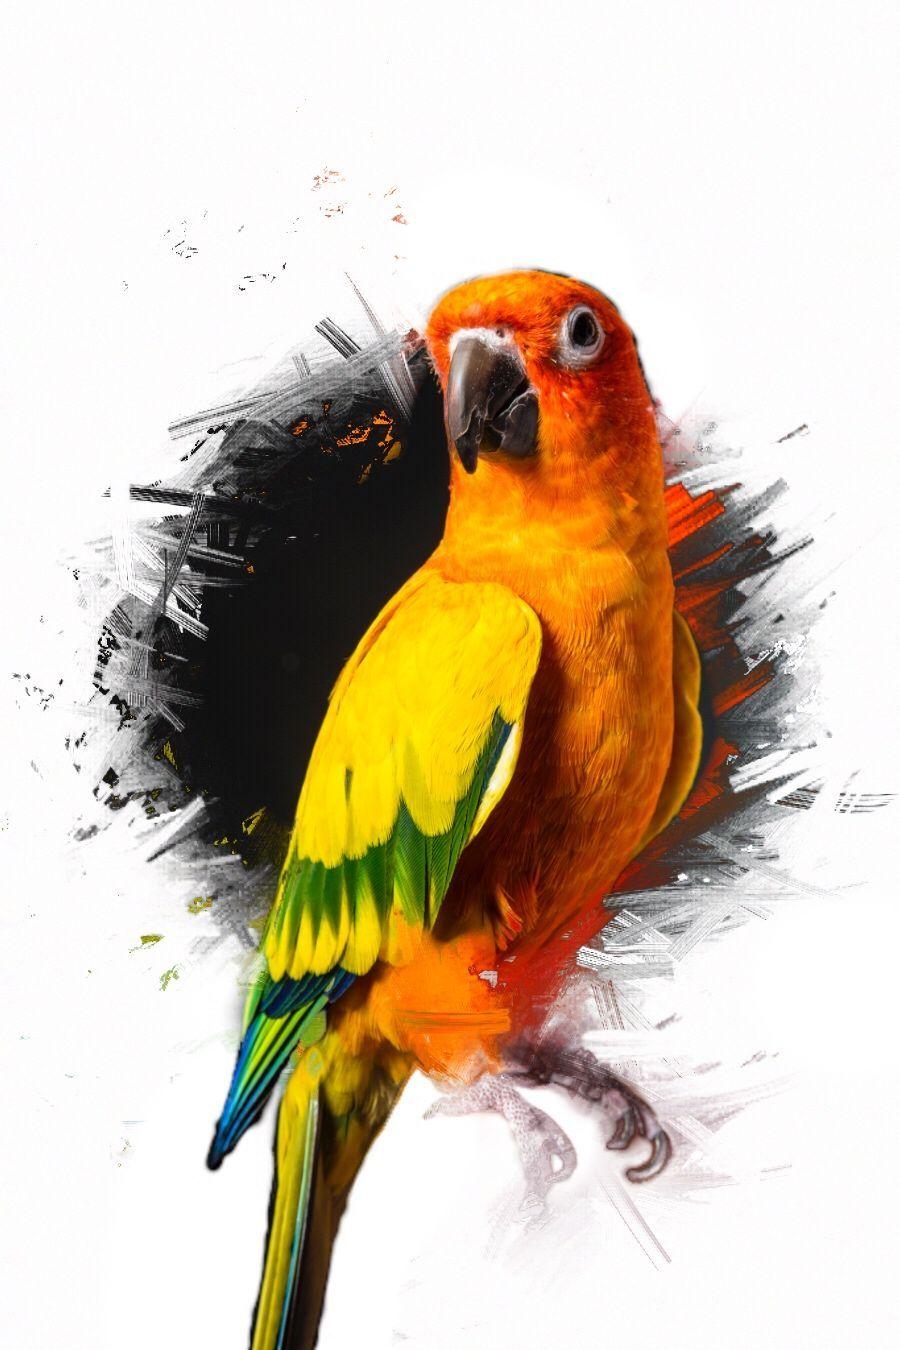 Maverick the Parrot Logo - Maverick the parrot | ramdom | Logan paul, Logan, Maverick logan paul